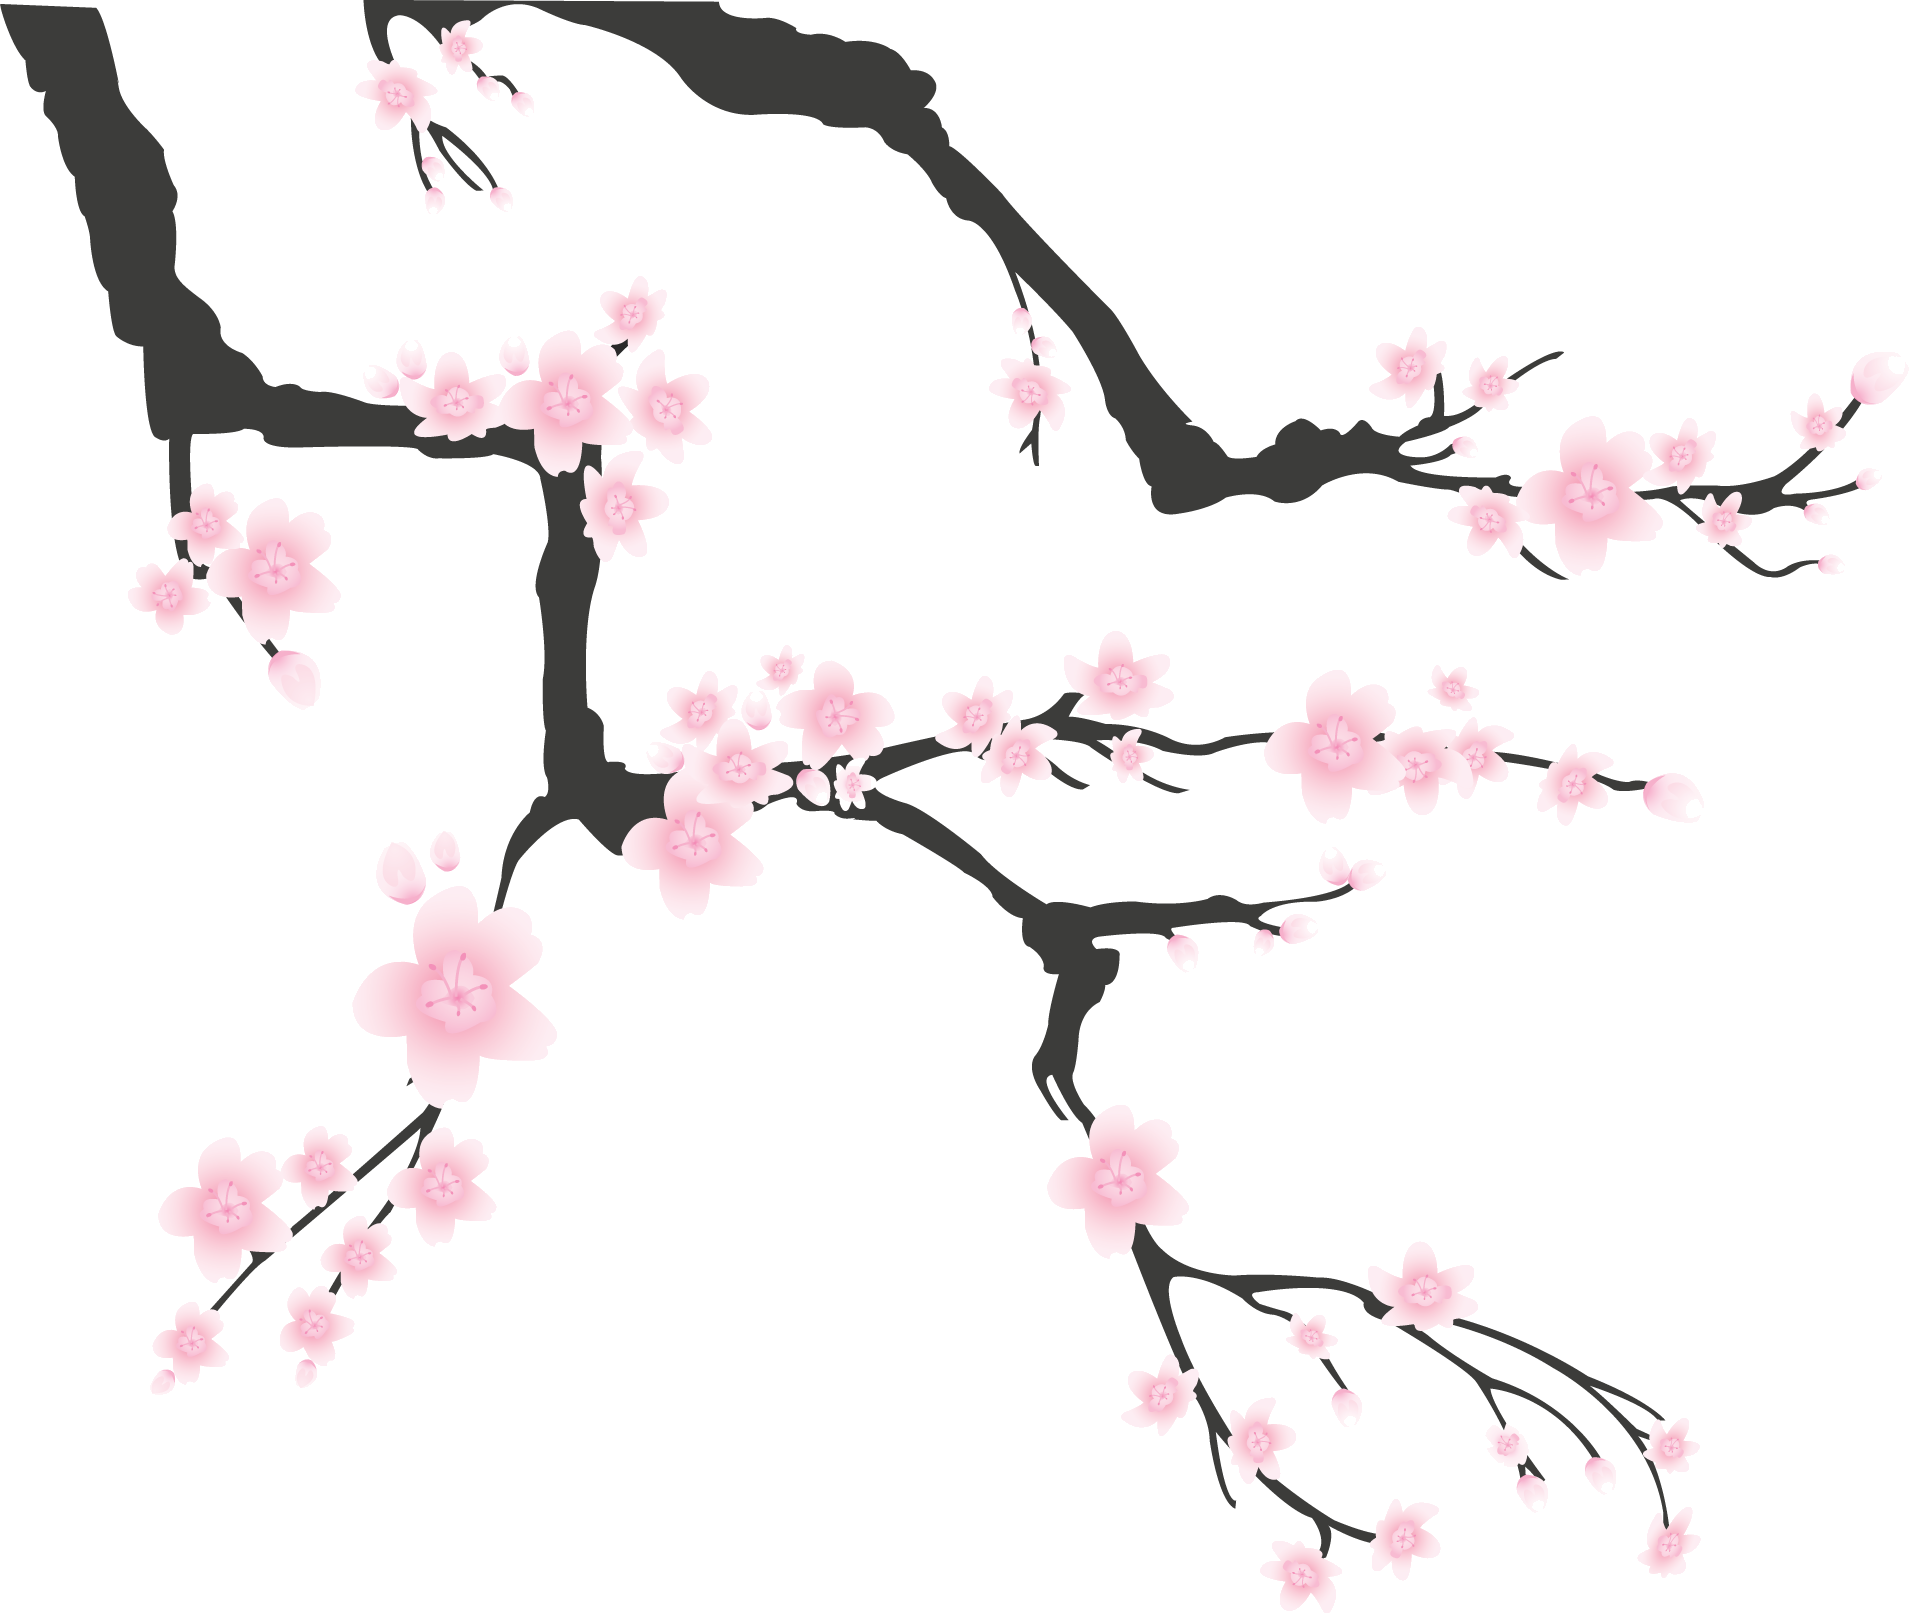 リアルな花のイラスト フリー素材 角 コーナー用no 1544 梅 桃 桜 枝